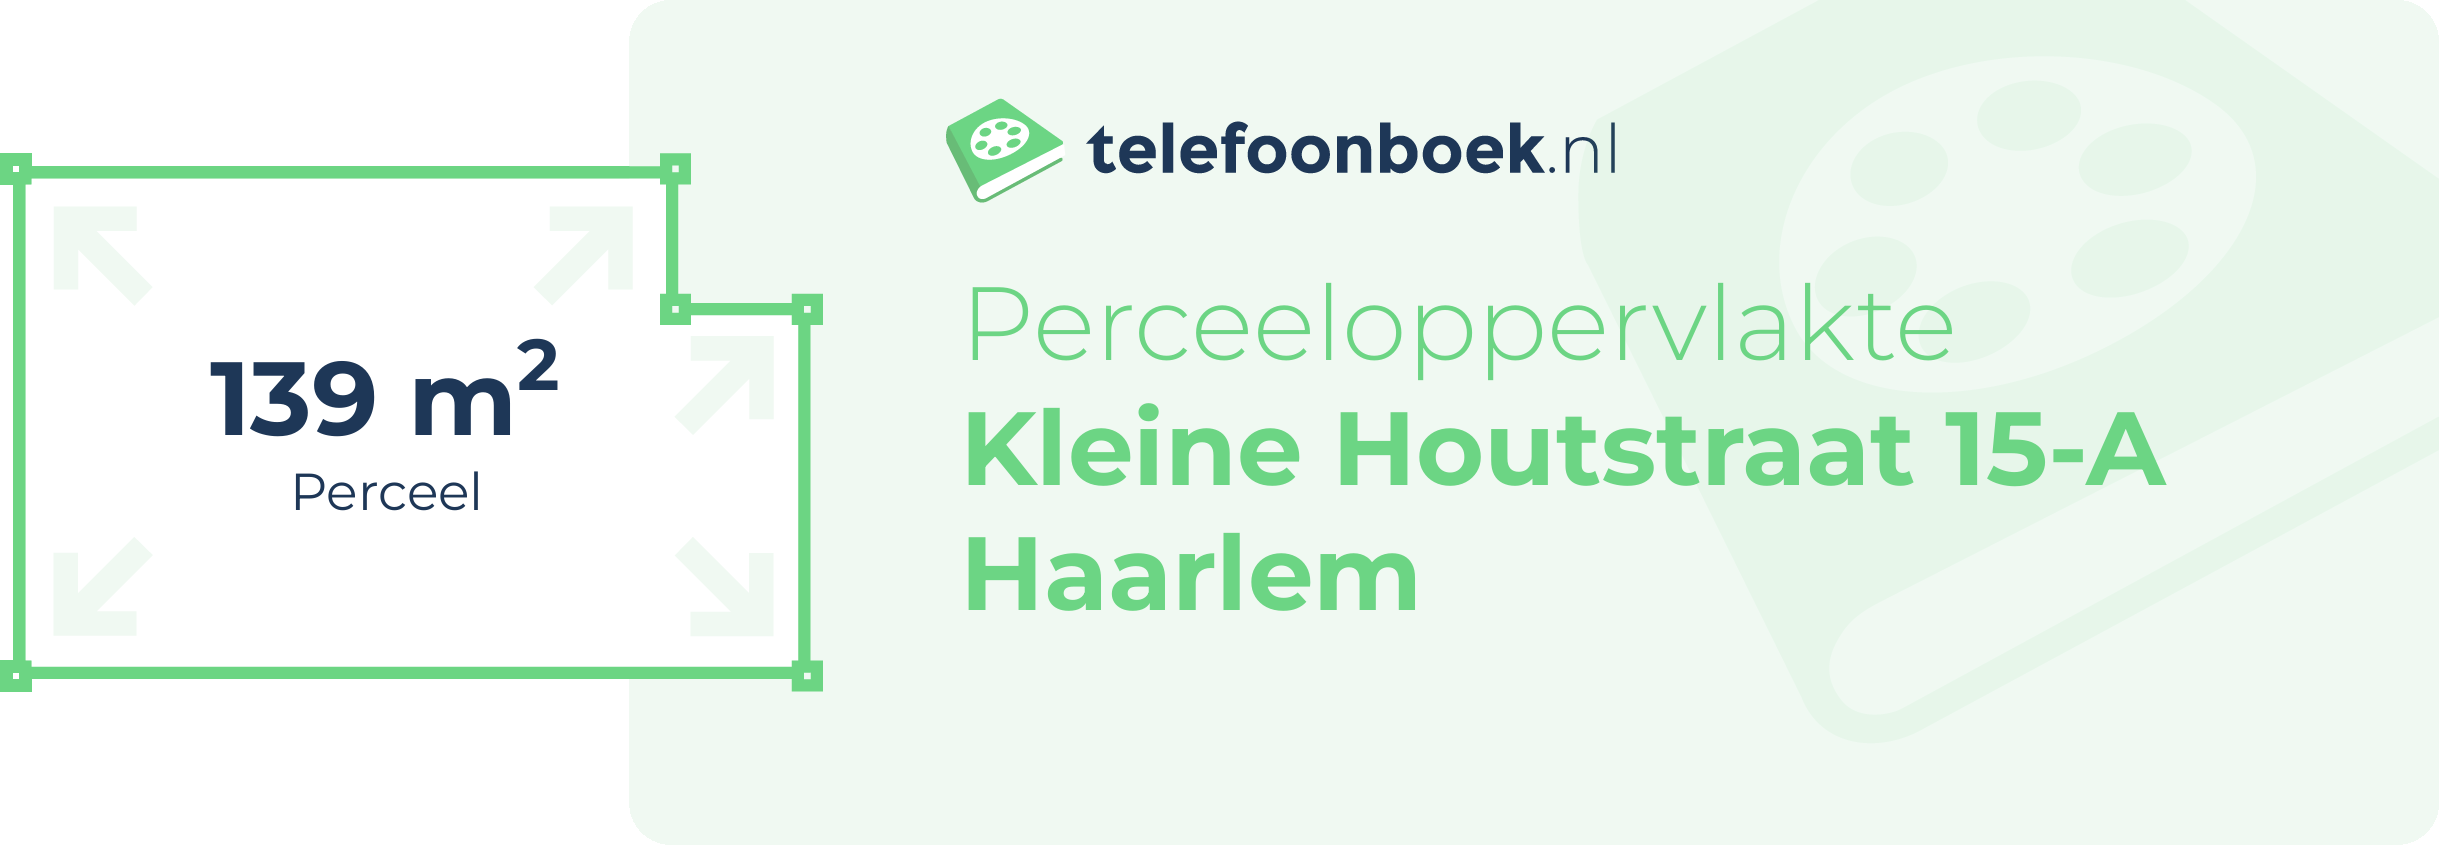 Perceeloppervlakte Kleine Houtstraat 15-A Haarlem